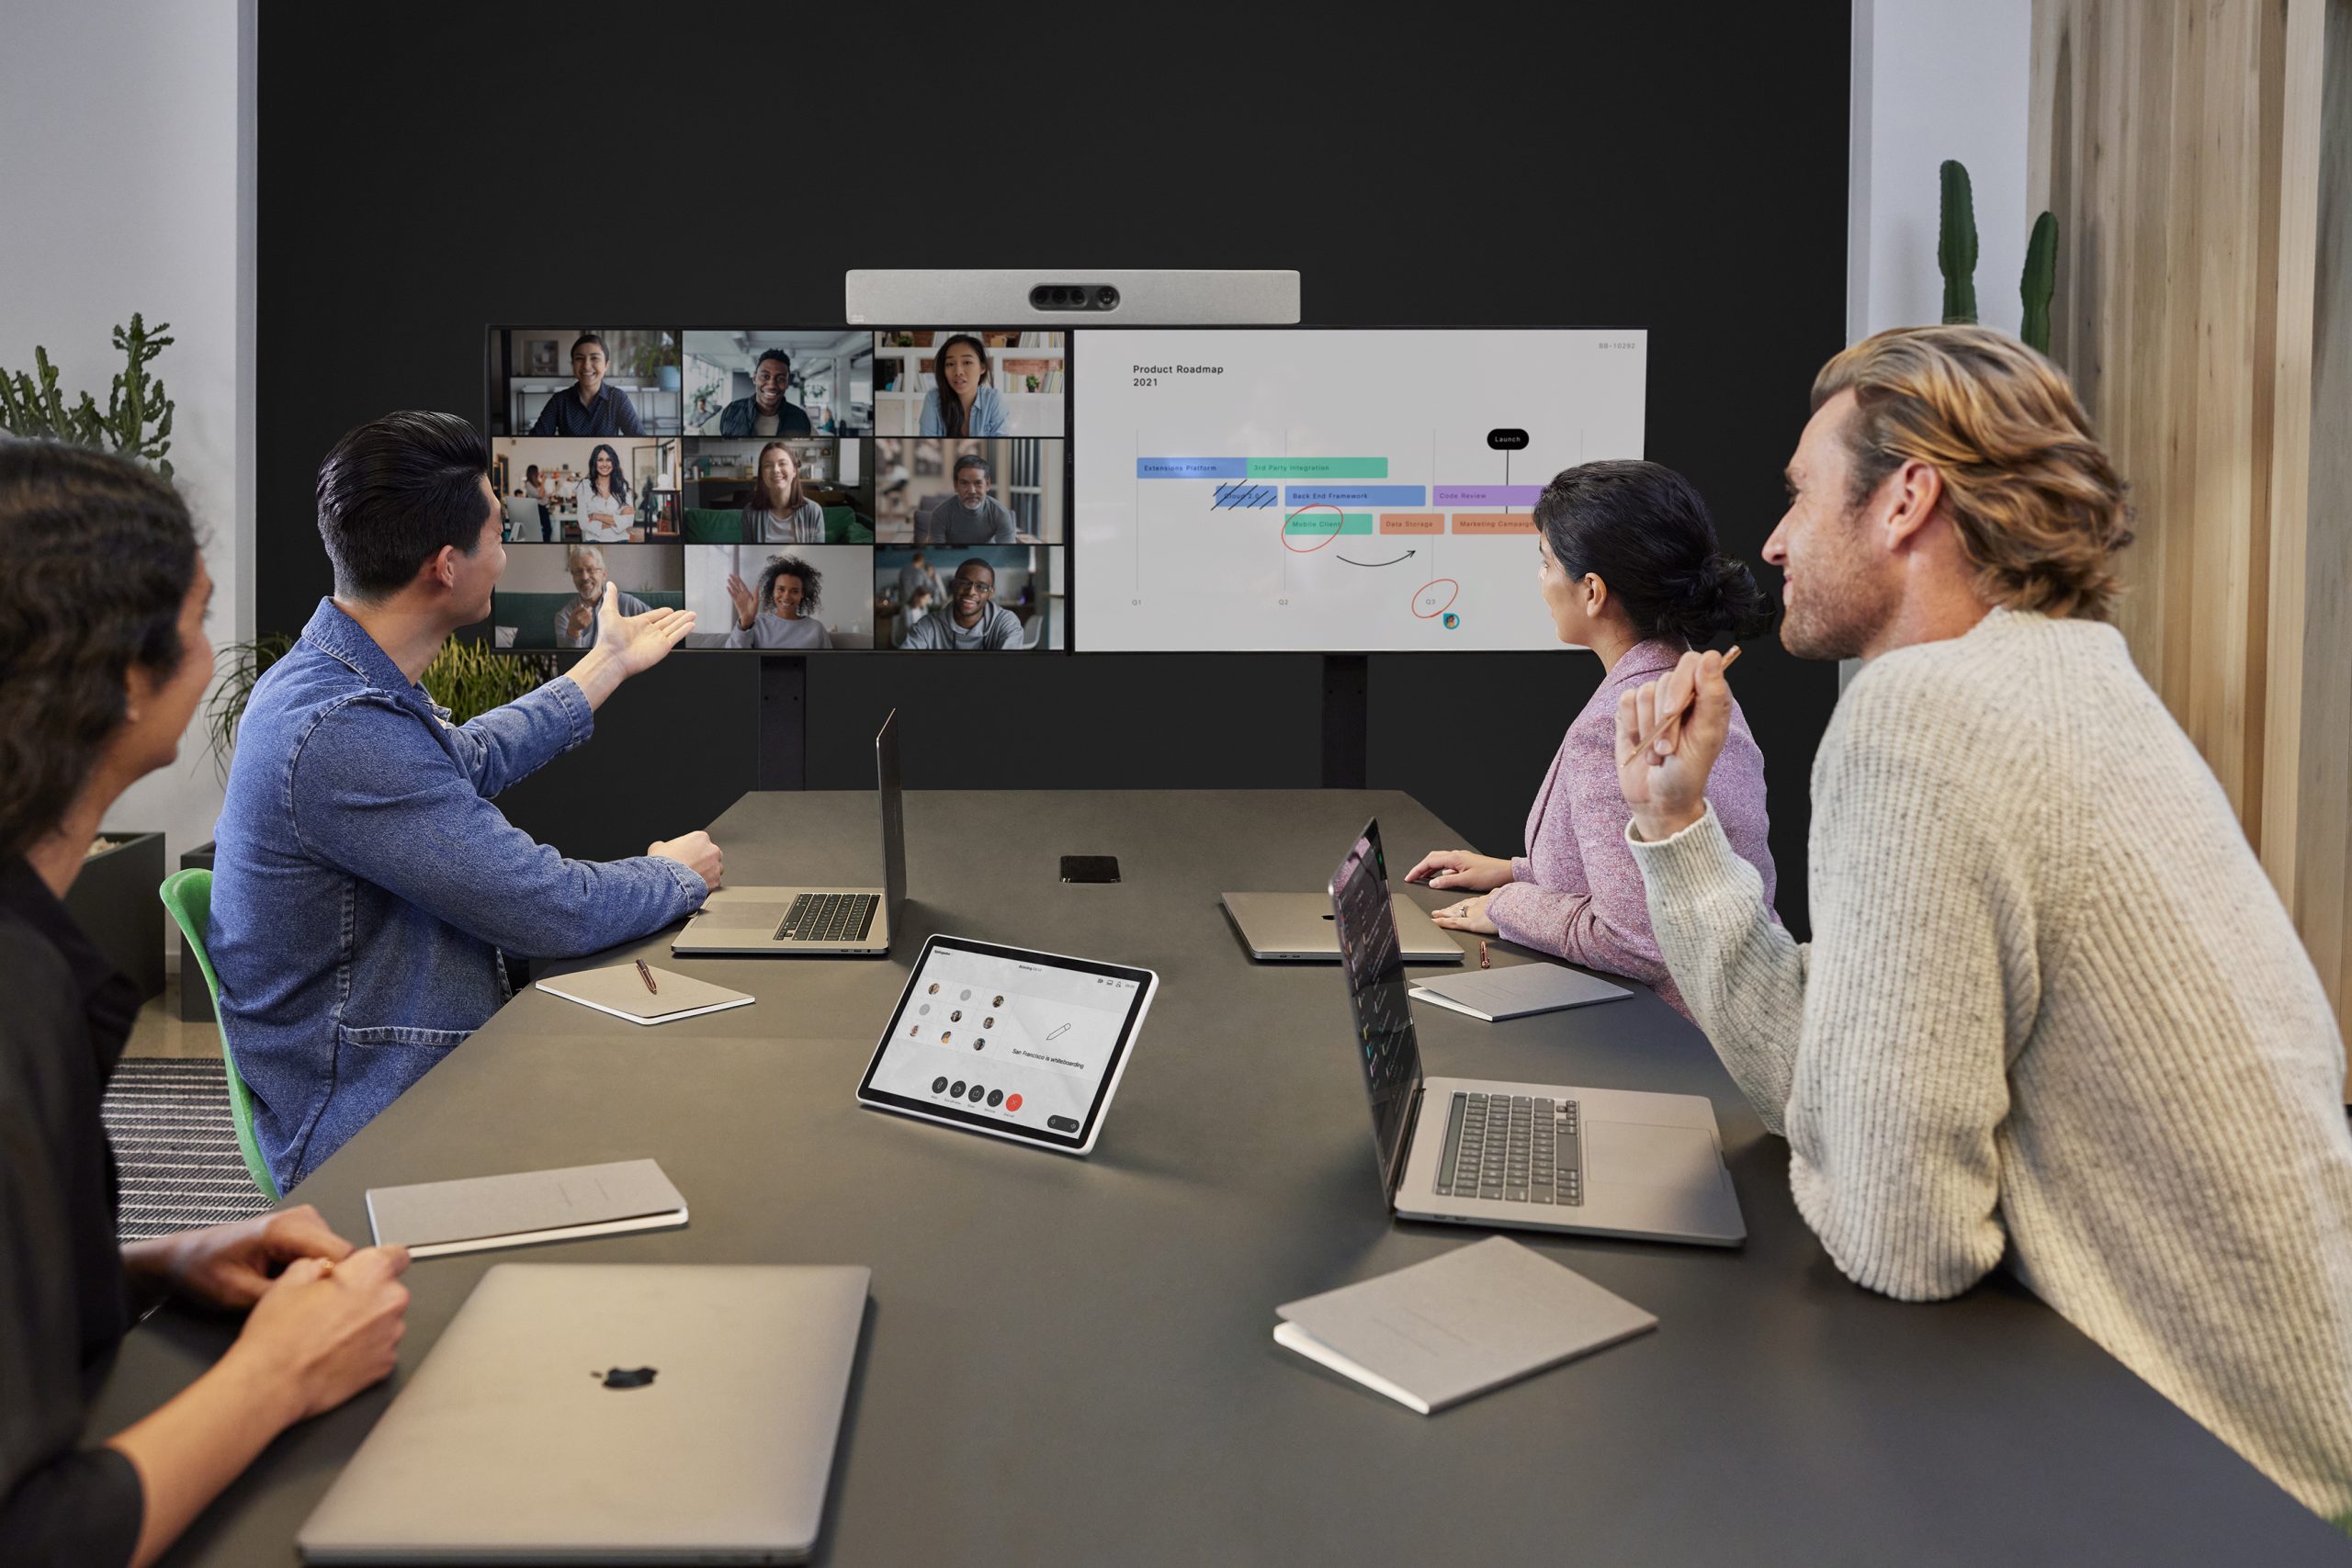 图片展示了四位专业人士在办公室开会，使用双屏幕视频会议系统，讨论图表和数据，氛围看起来专注而合作。